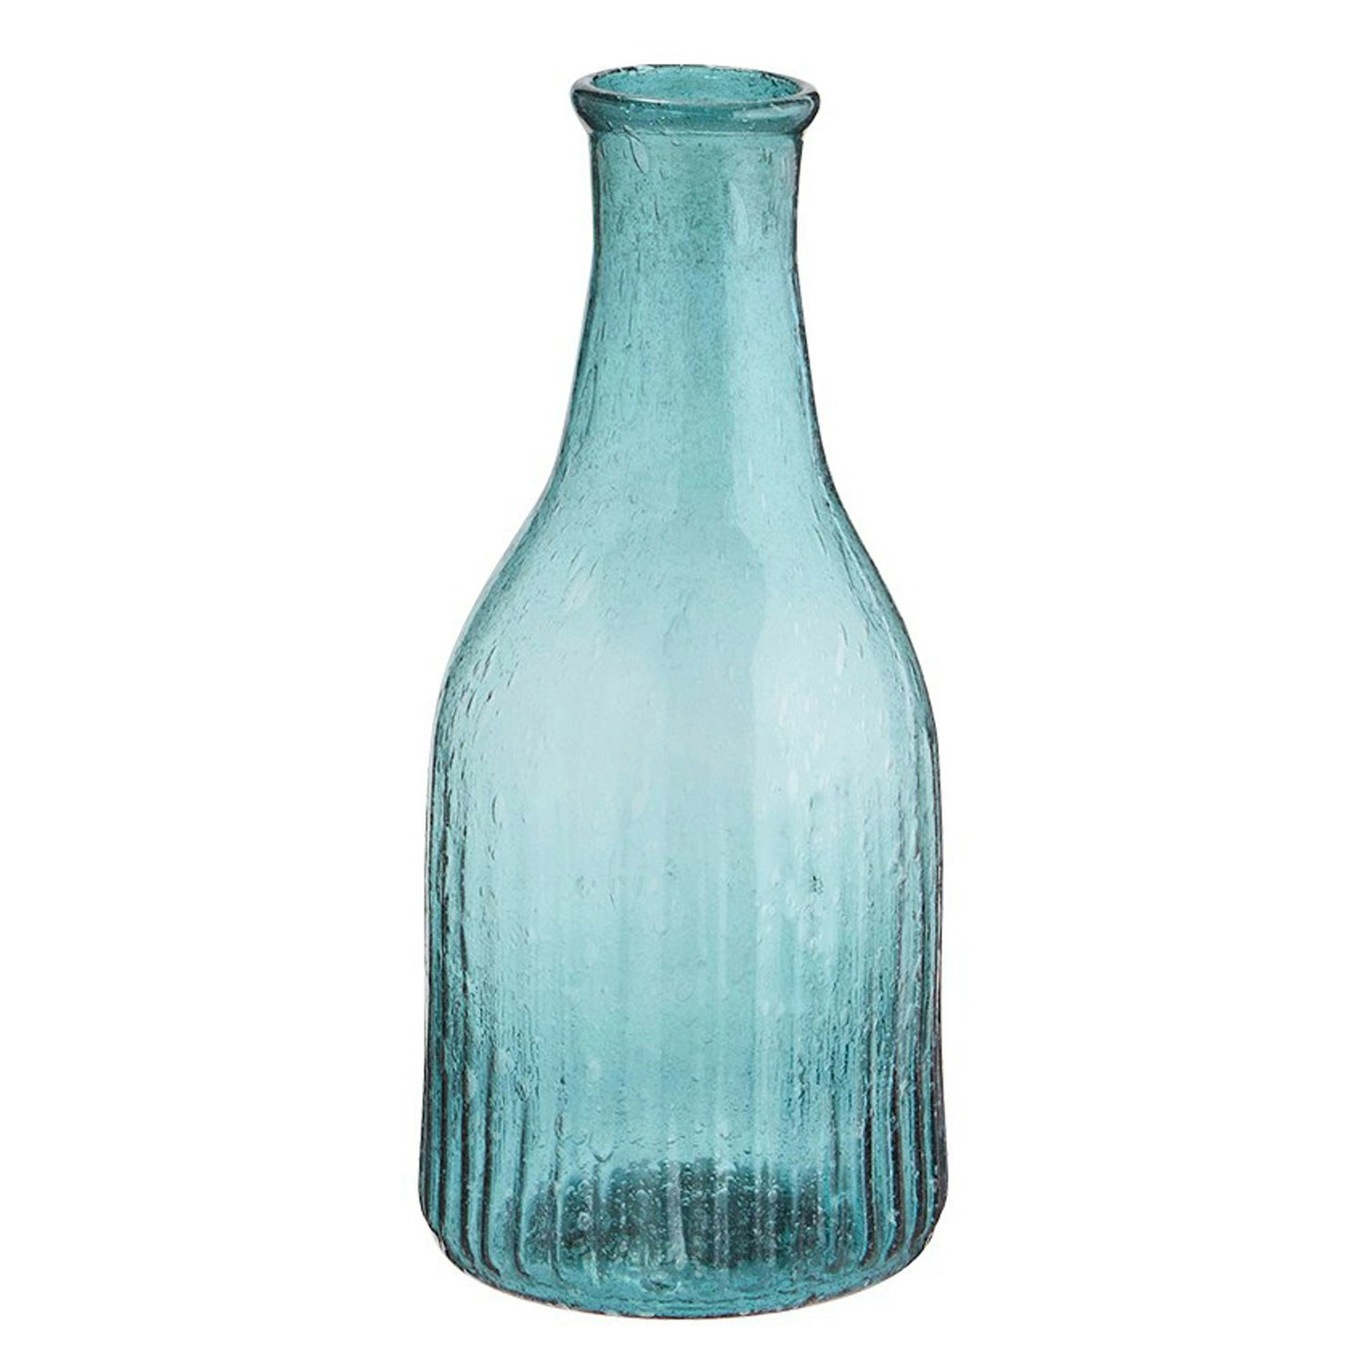 Vase Genanvendt Glas Teal, 7 cm